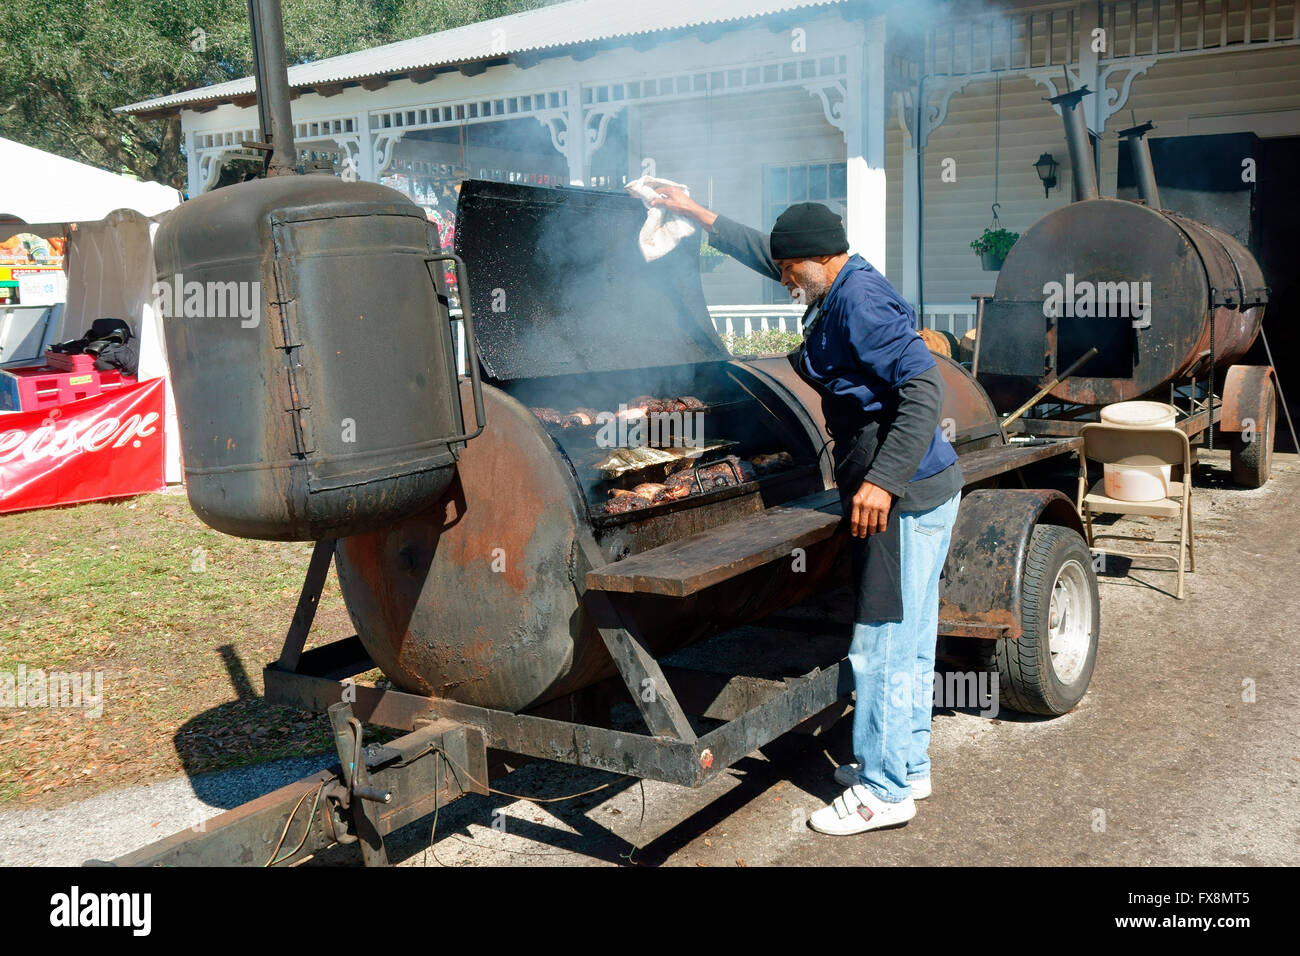 Huge barbecue immagini e fotografie stock ad alta risoluzione - Alamy